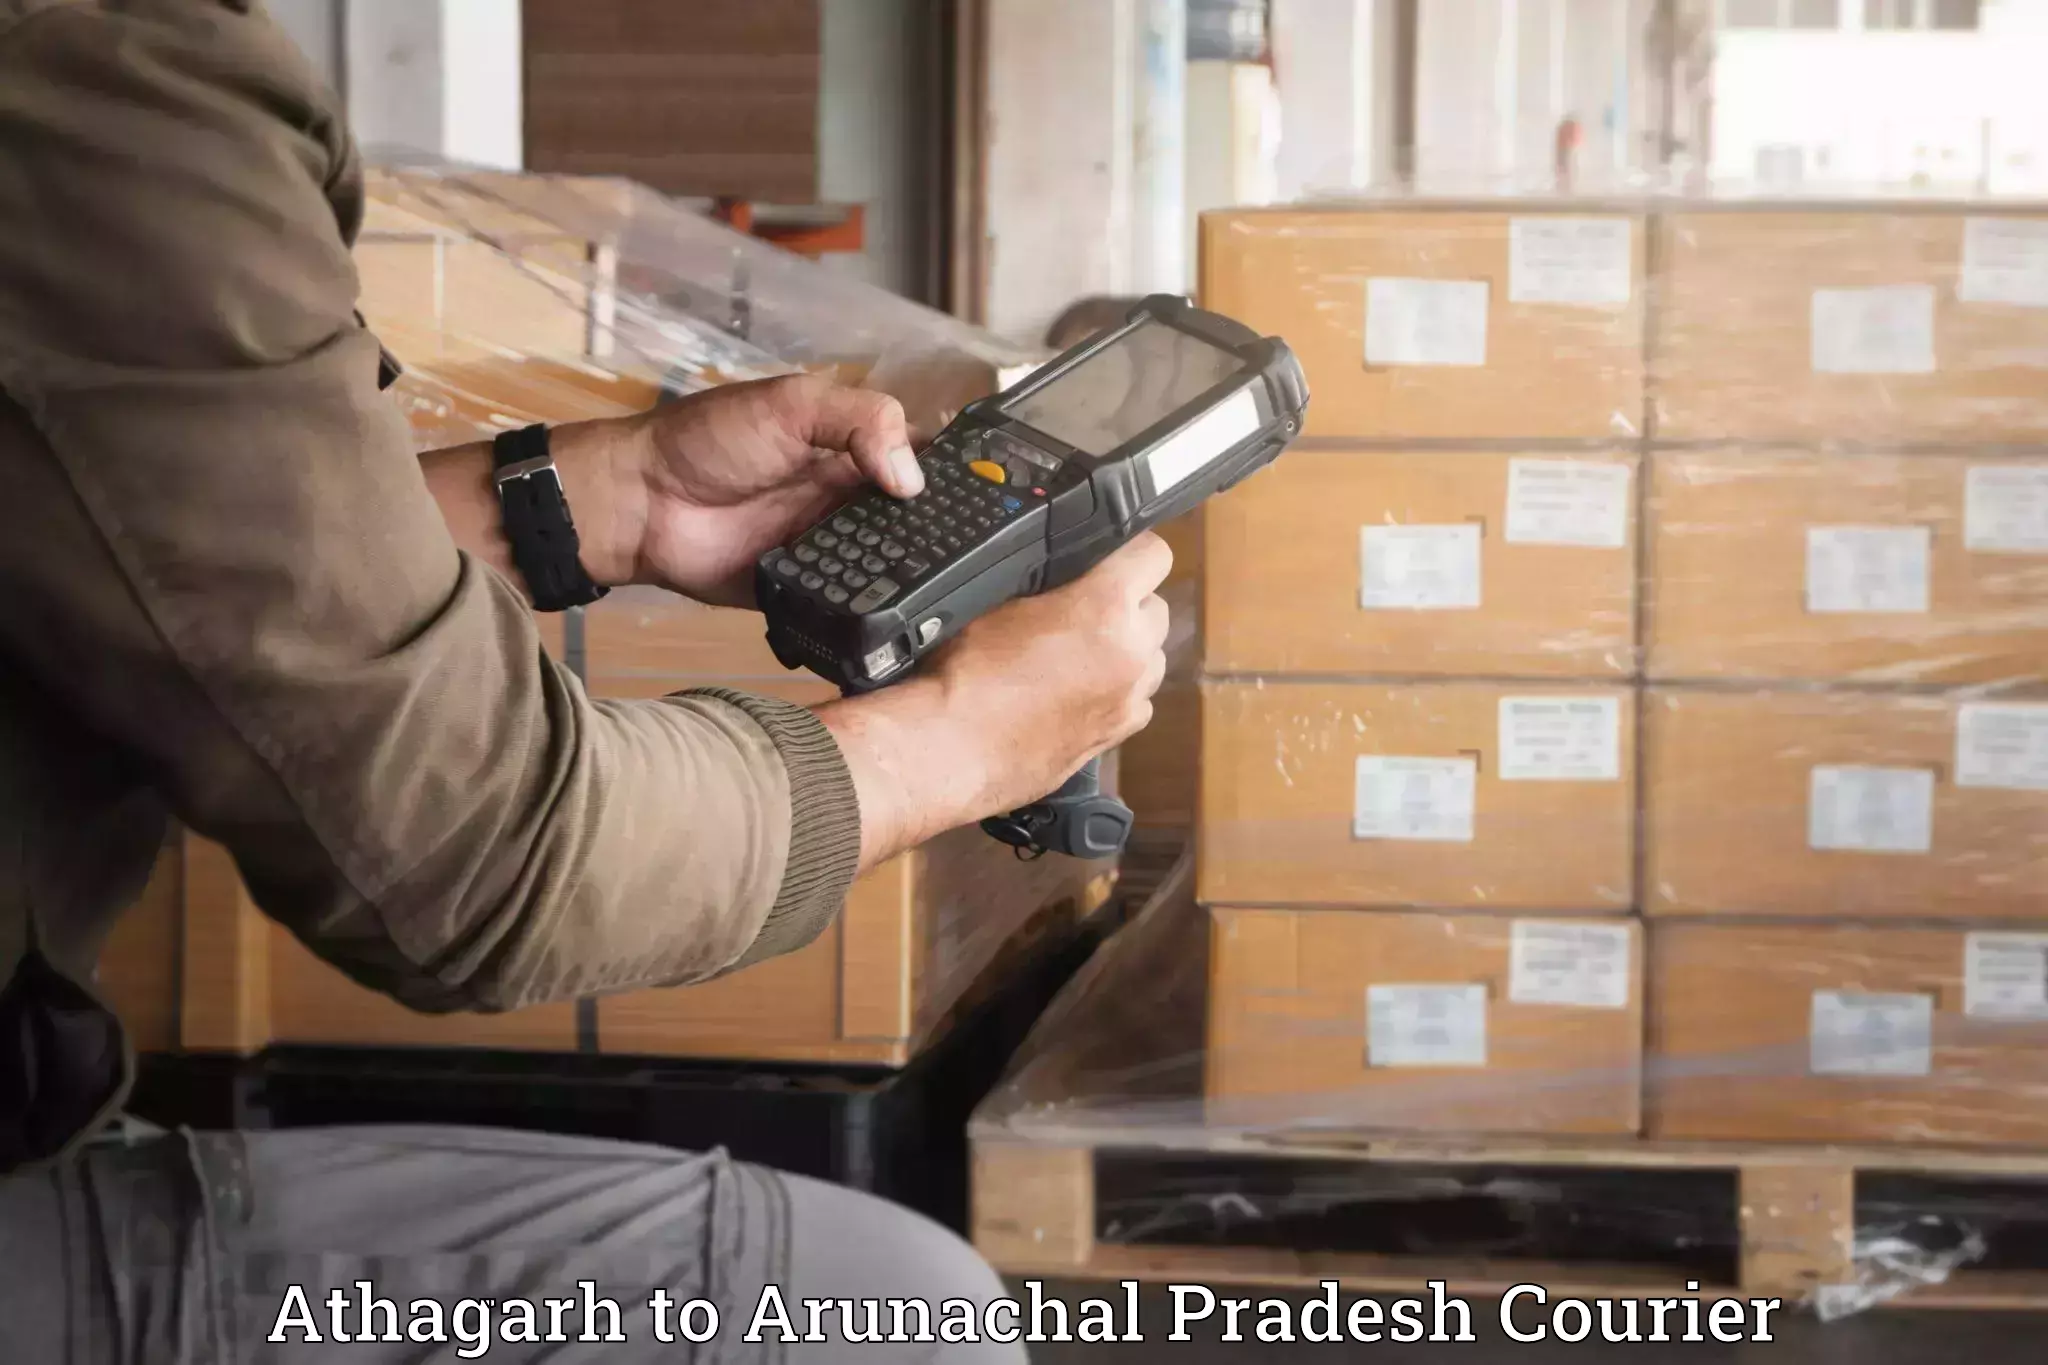 Furniture delivery service Athagarh to Arunachal Pradesh